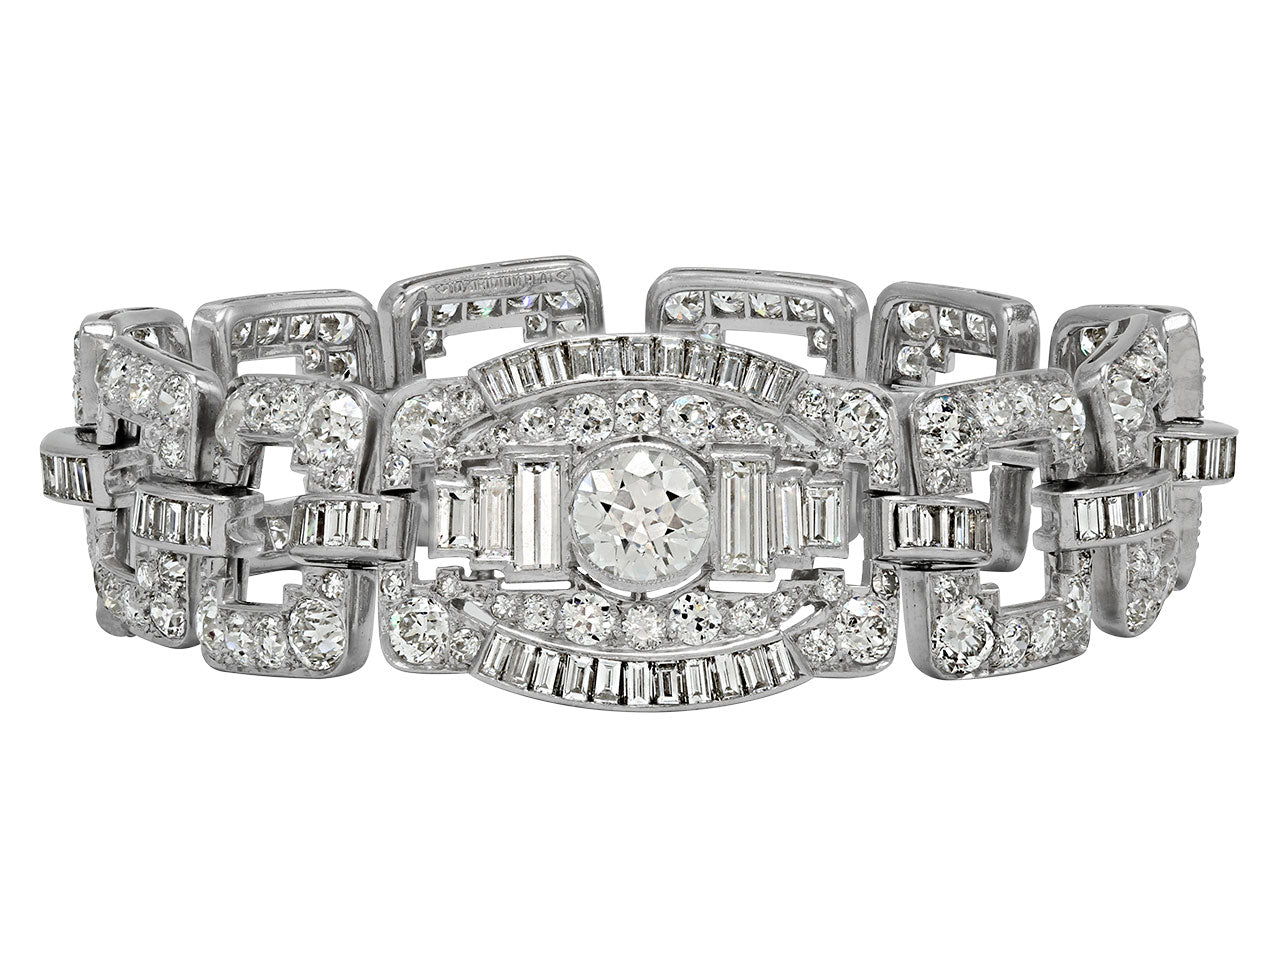 Art Deco Diamond Bracelet in Platinum